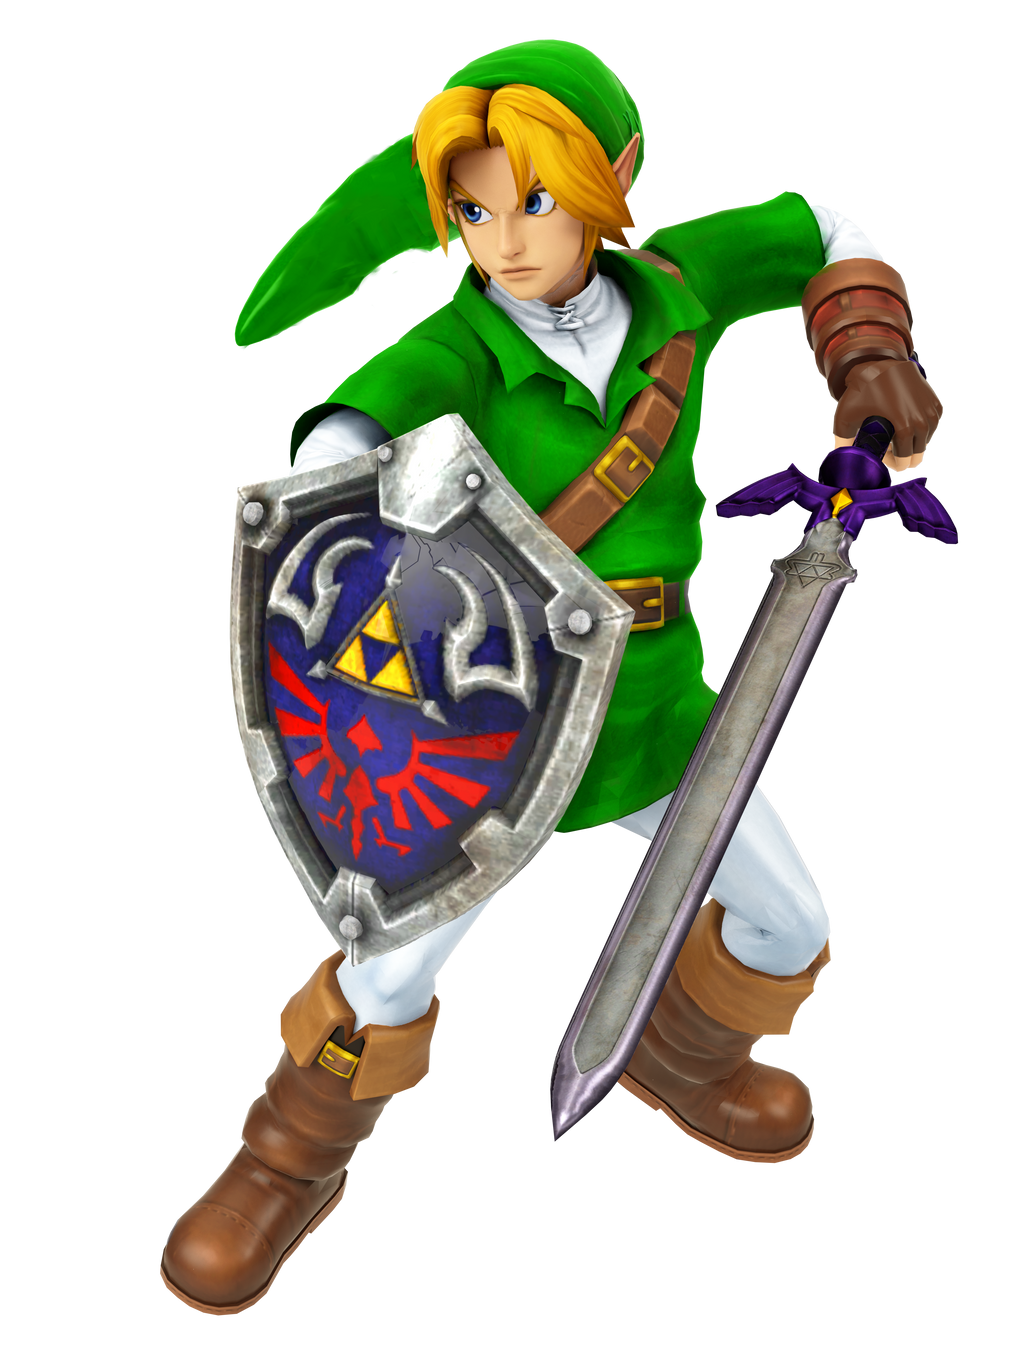 SC2] The Legend of Zelda - Link render by RenDama on DeviantArt